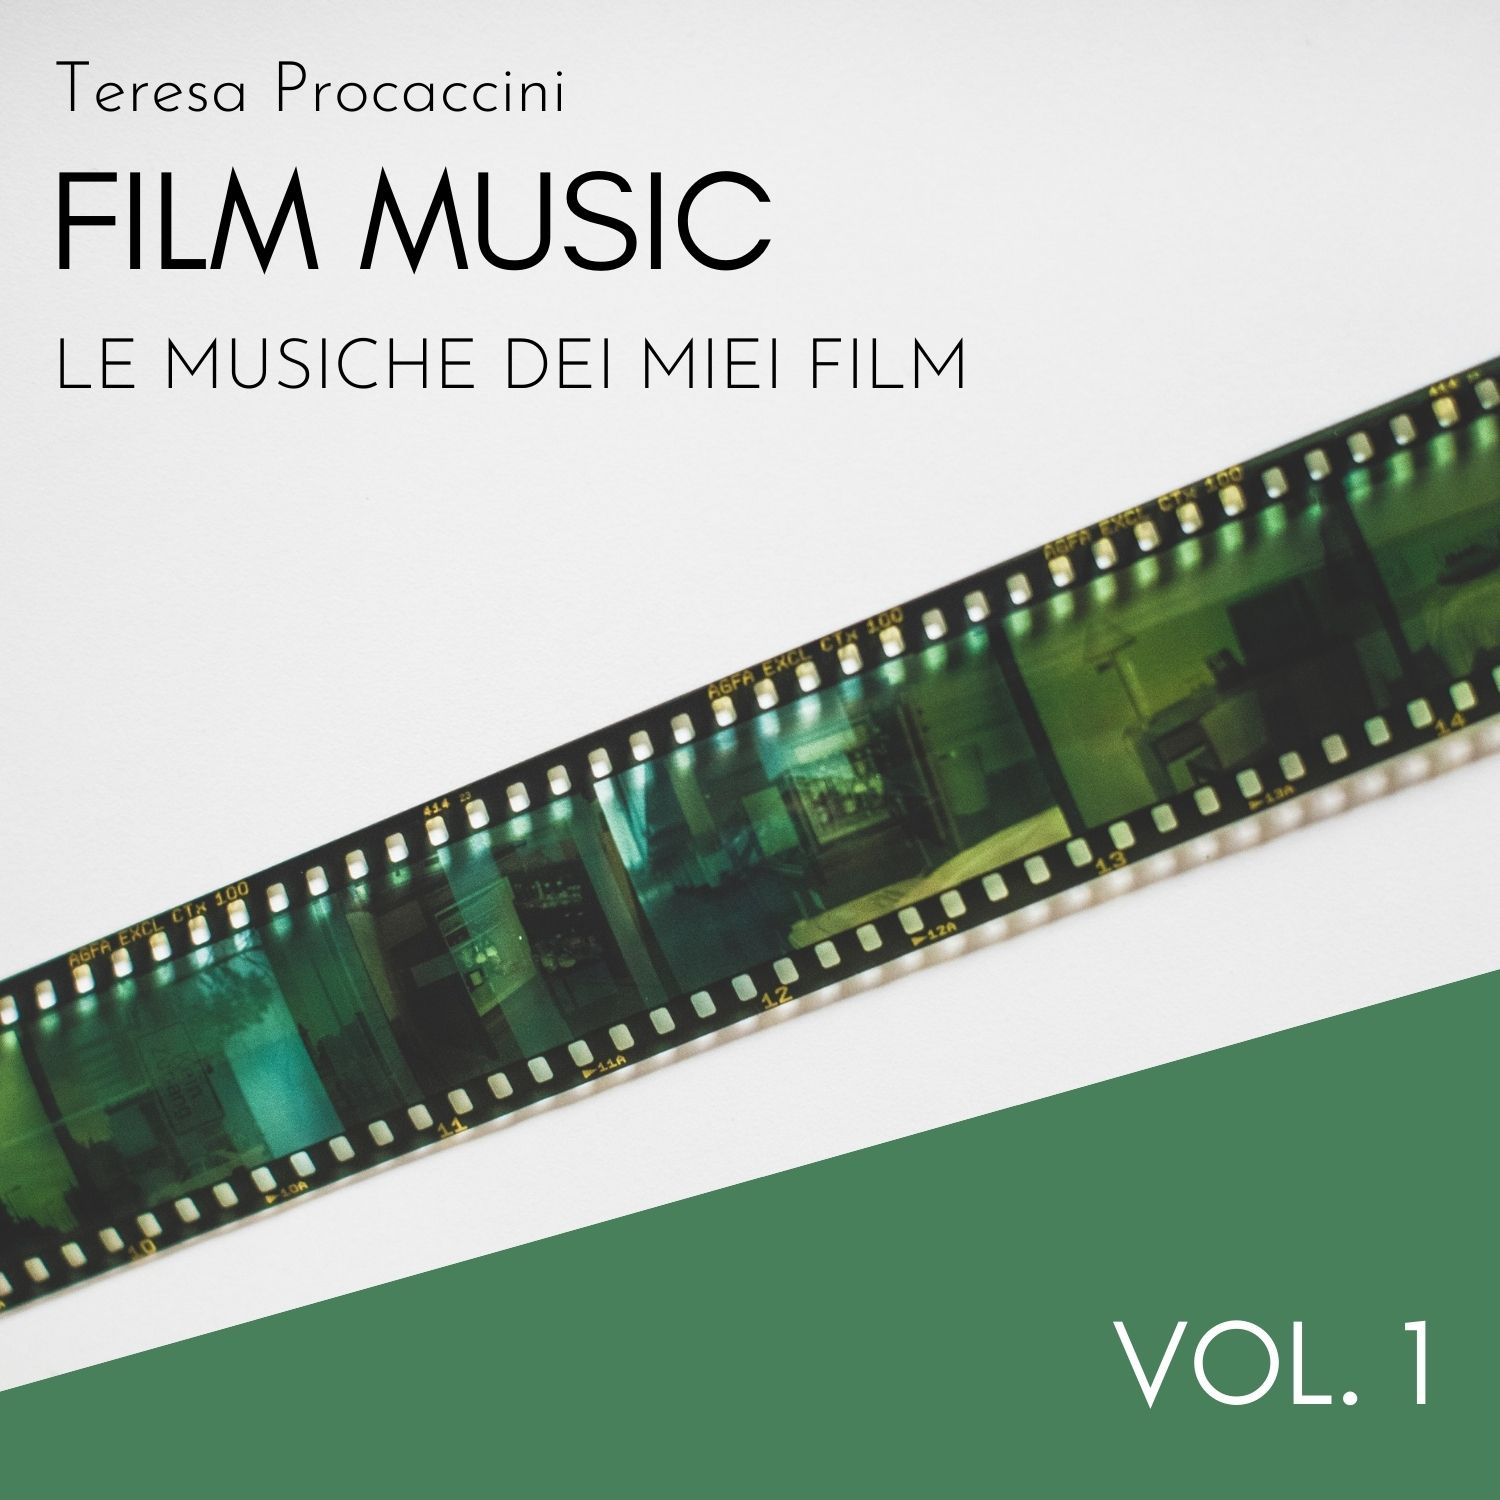 Film Music Vol. 1